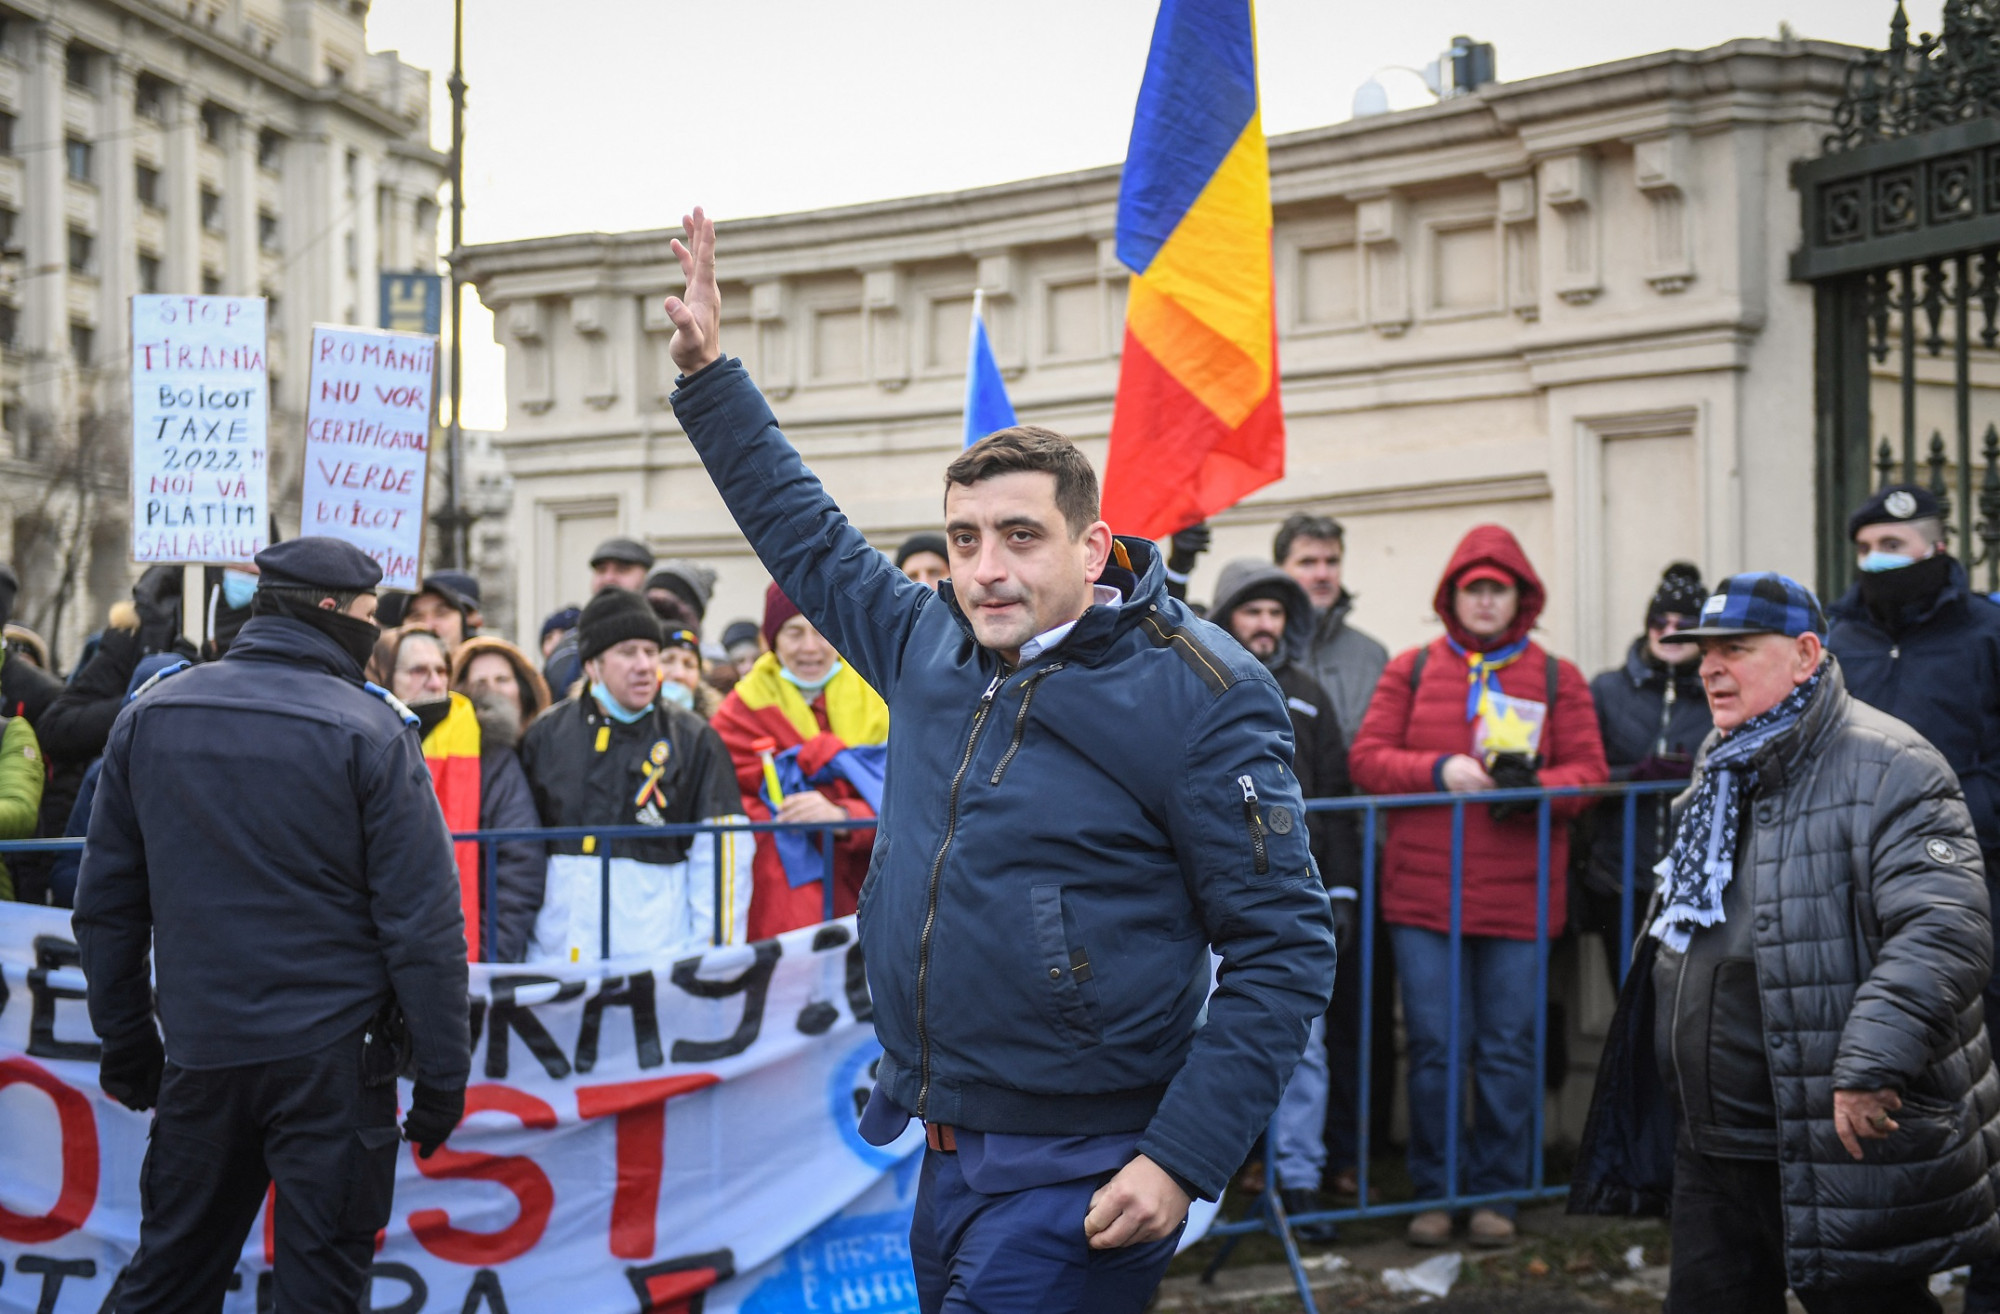 Képviselőkre támadtak és csendőrökkel dulakodtak nacionalisták a román képviselőház bejáratánál